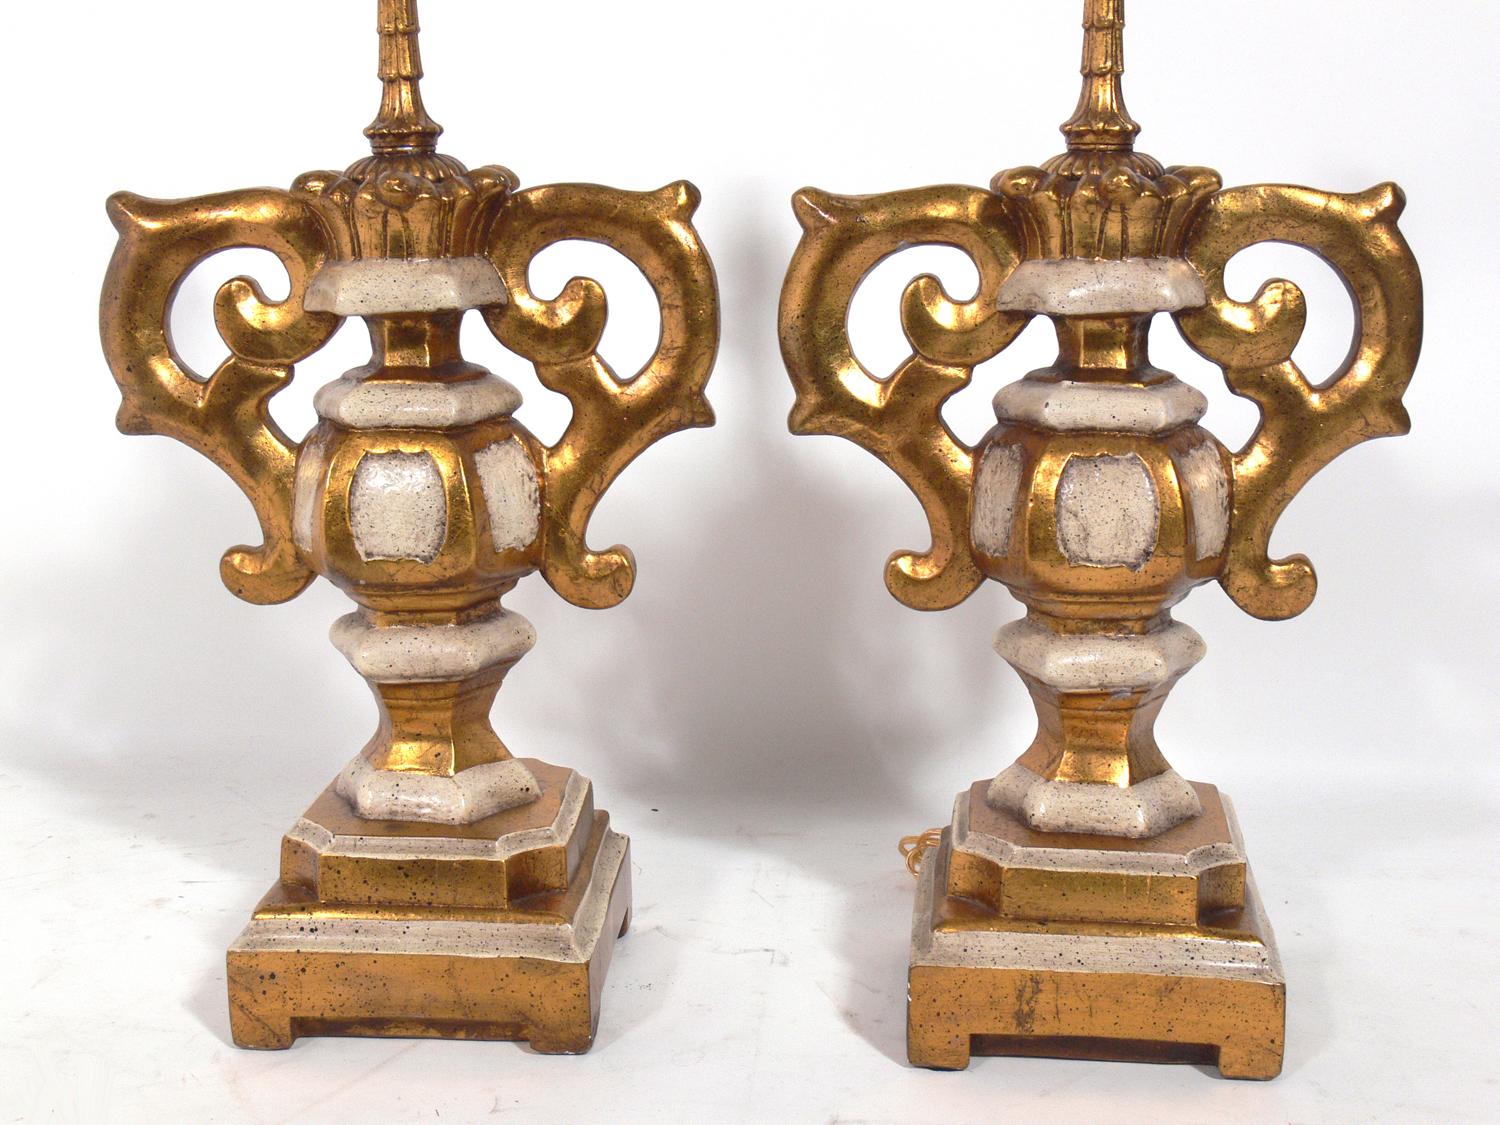 Lampes-urnes italiennes en plâtre doré, Italie, vers les années 1950. Ils ont été recâblés et sont prêts à être utilisés. Le prix et les mesures indiqués comprennent les nuances.